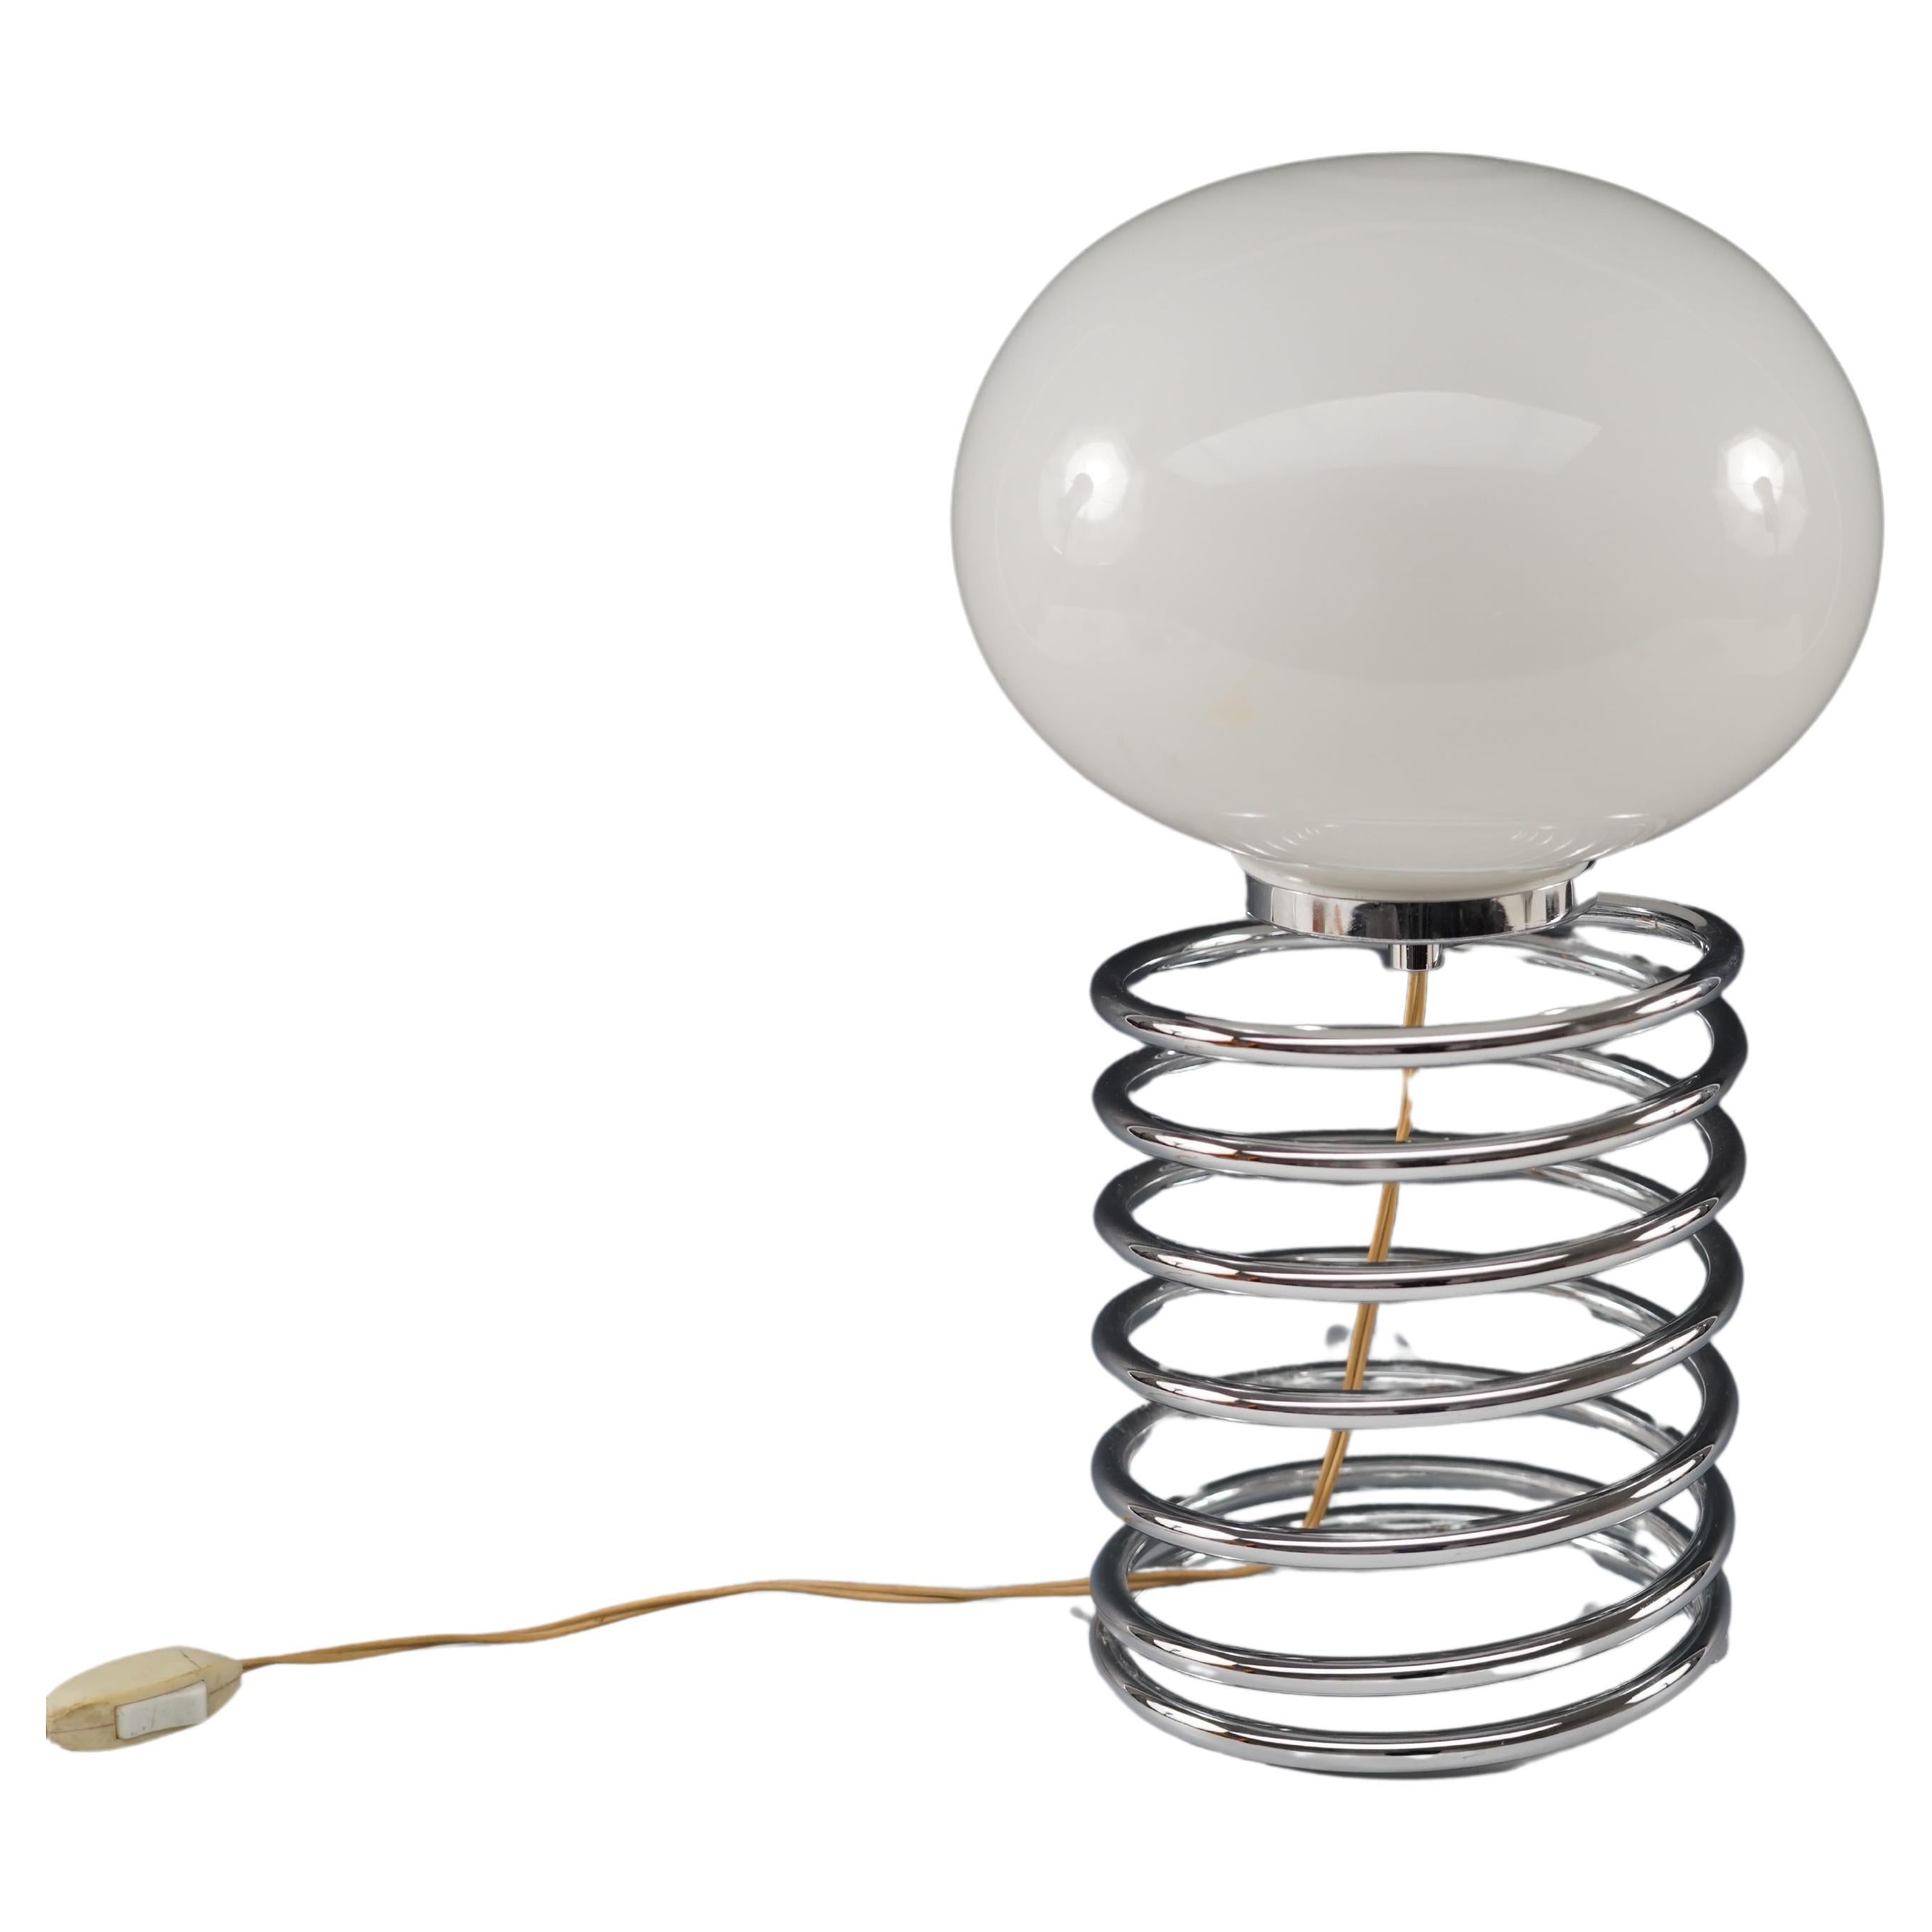 Lampe en spirale d'Ingo Maurer pour Design M, Allemagne, vers 1966